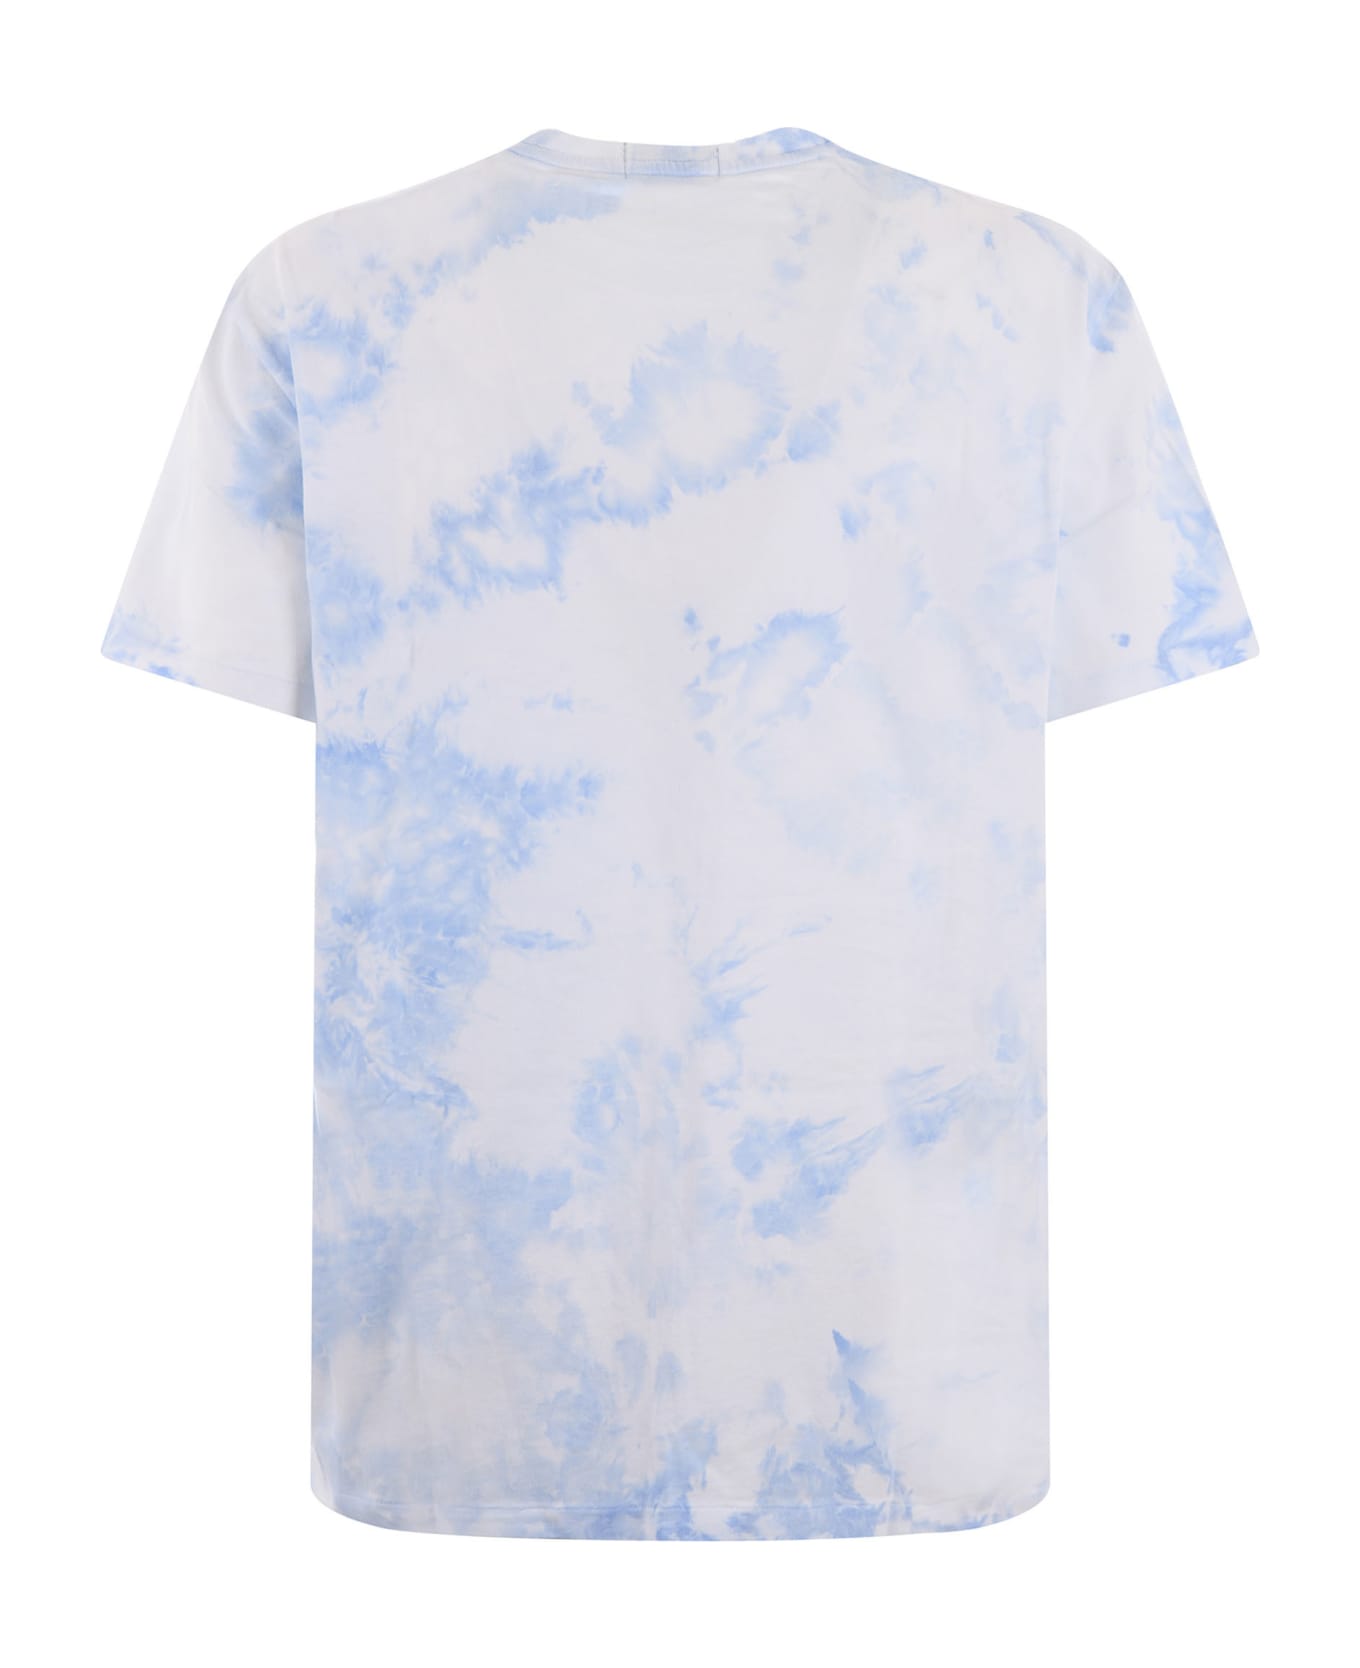 Polo Ralph Lauren T-shirt - Bianco/azzurro